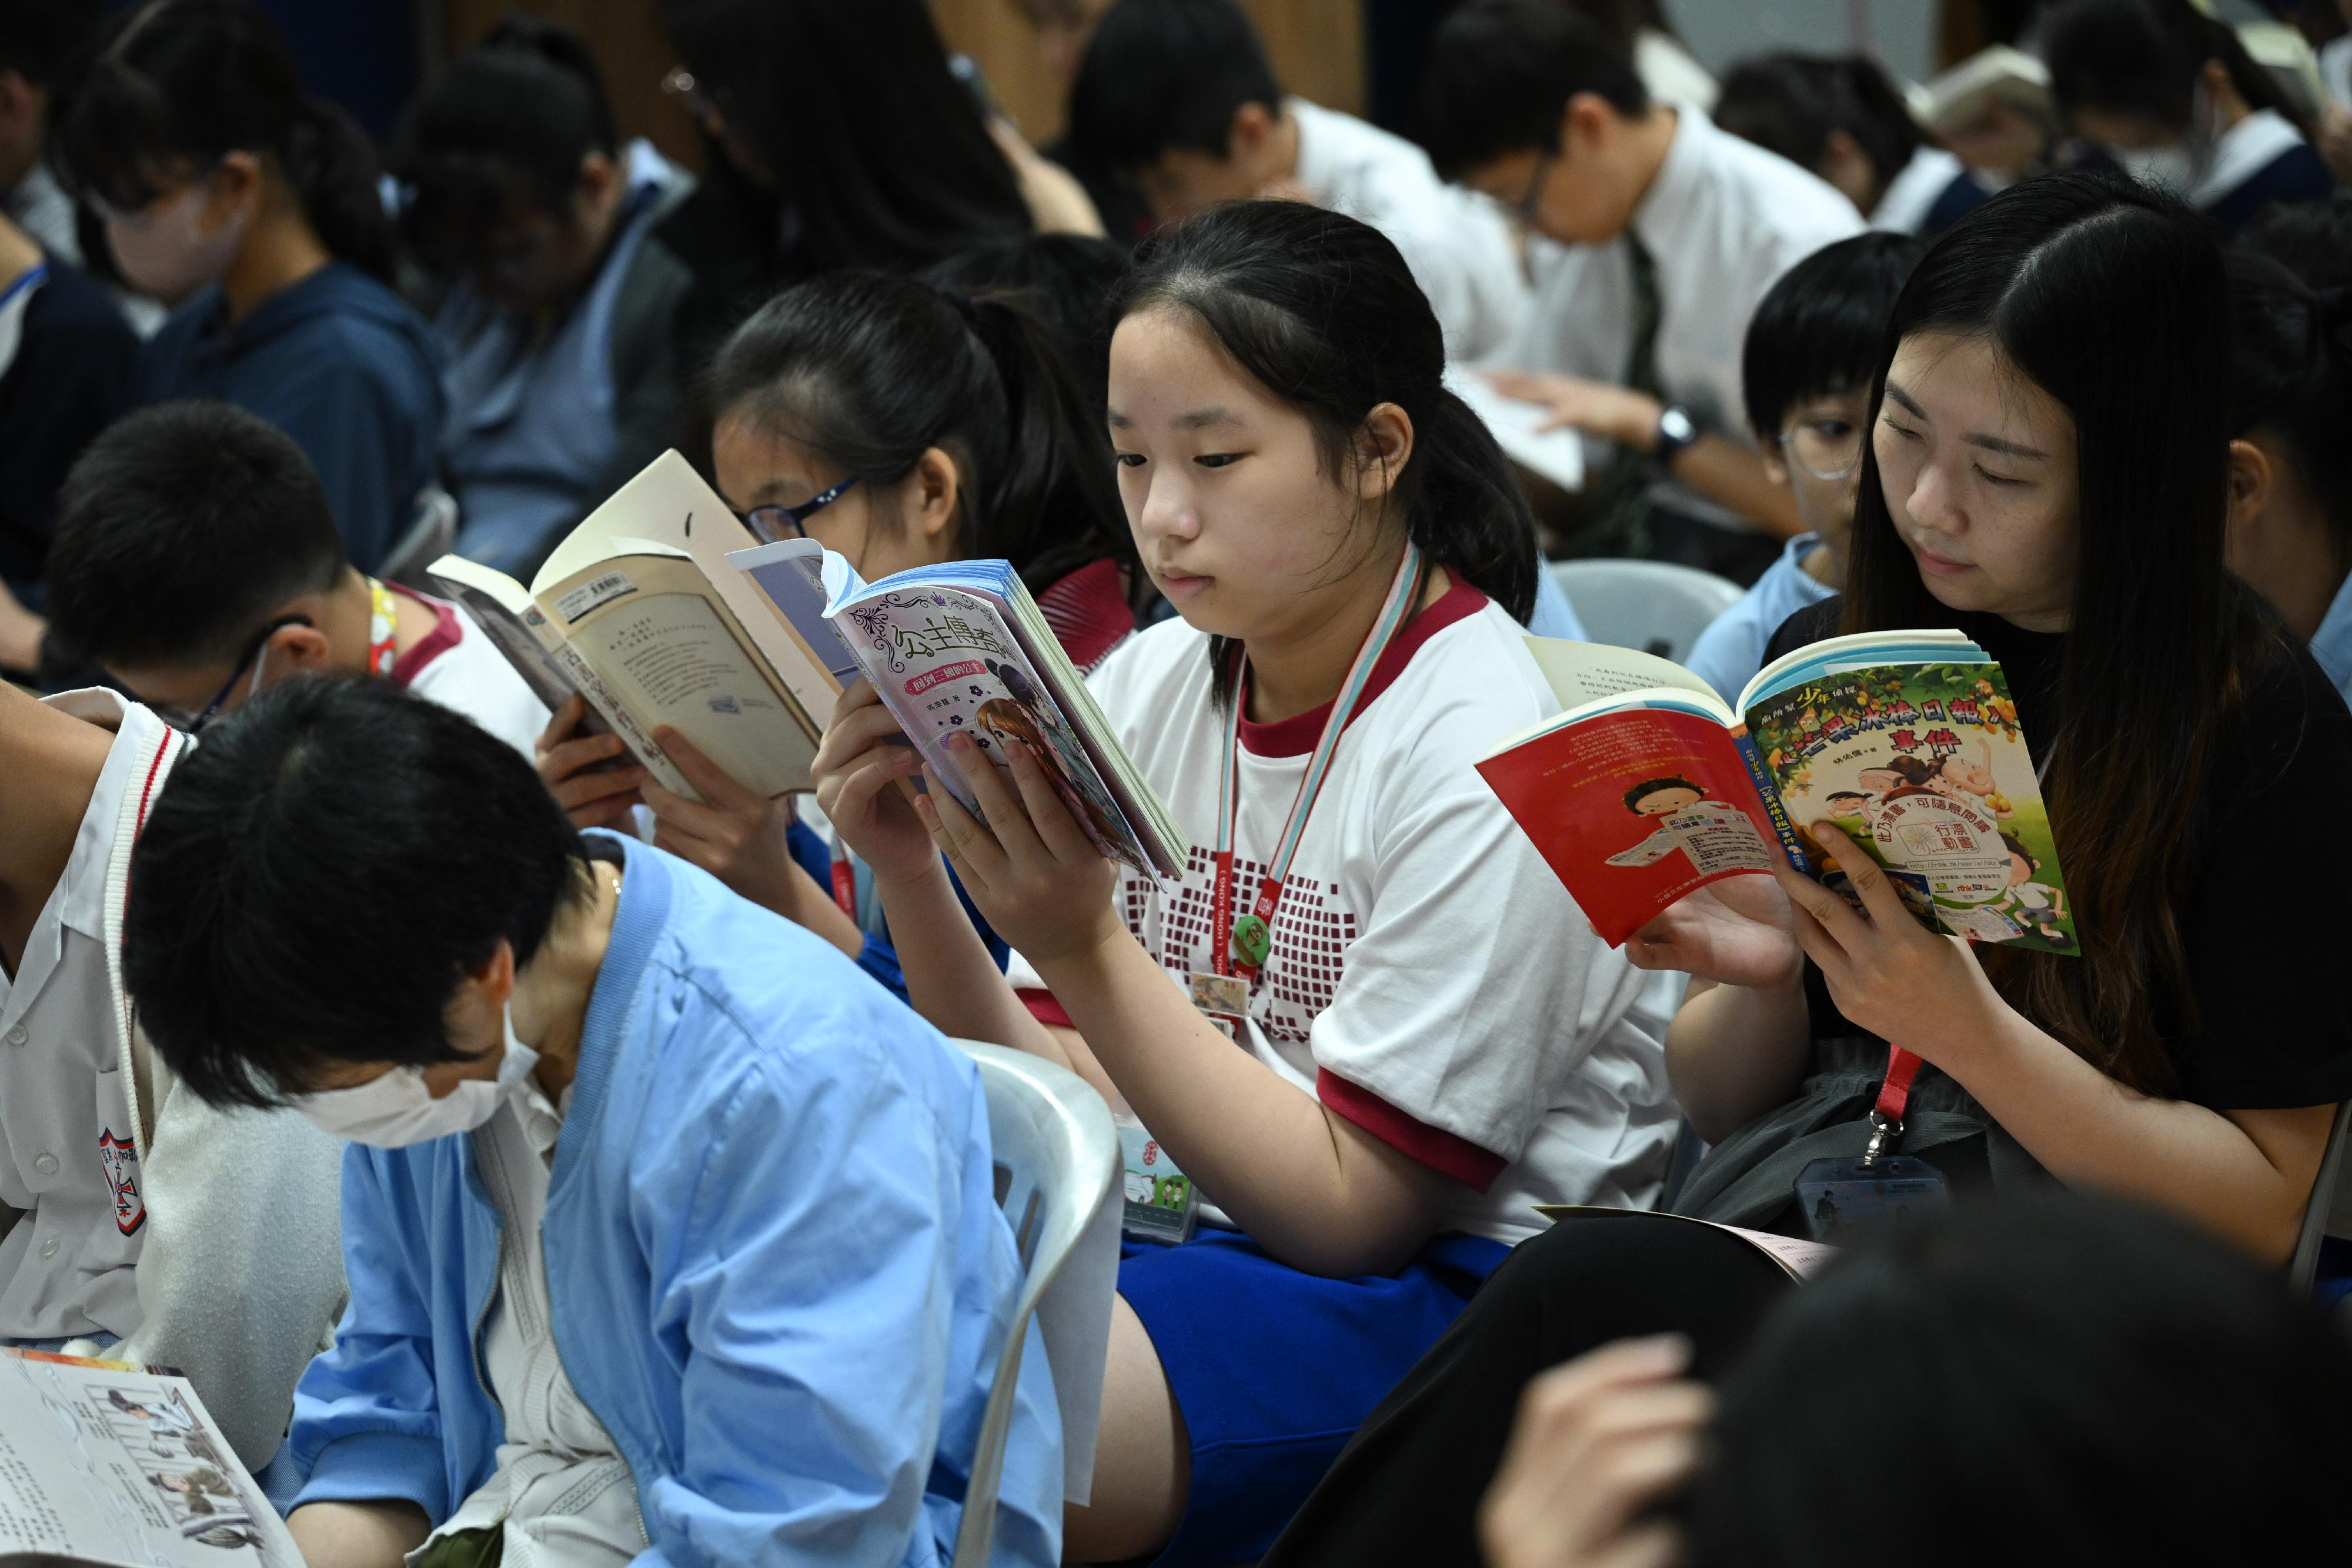 教育局今日（四月二十三日）在首个「香港全民阅读日」举办「中小学联校共读半小时活动」，有超过220间中小学参与。图示在秀茂坪香港圣公会何明华会督中学参与活动的学生。